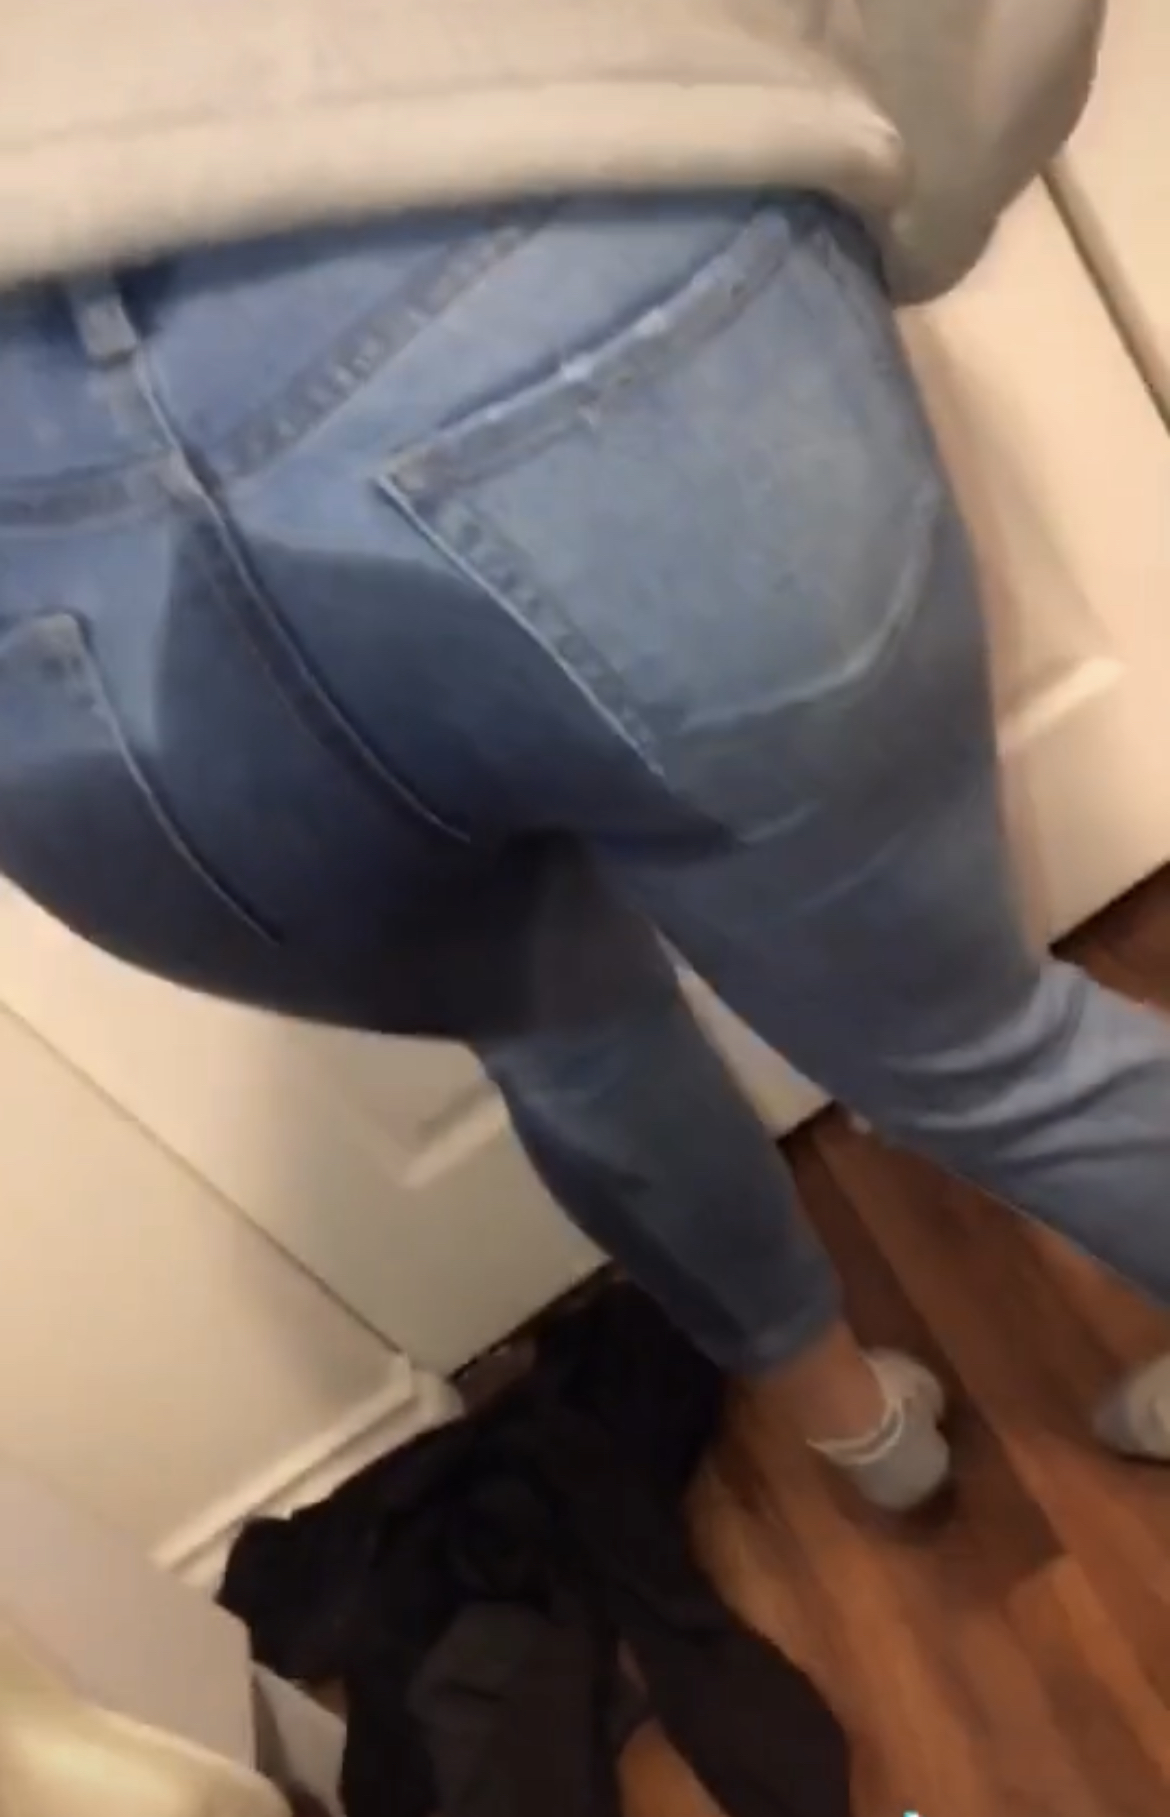 Peeing Peed Herself Filming A Tik Tok ThisVid